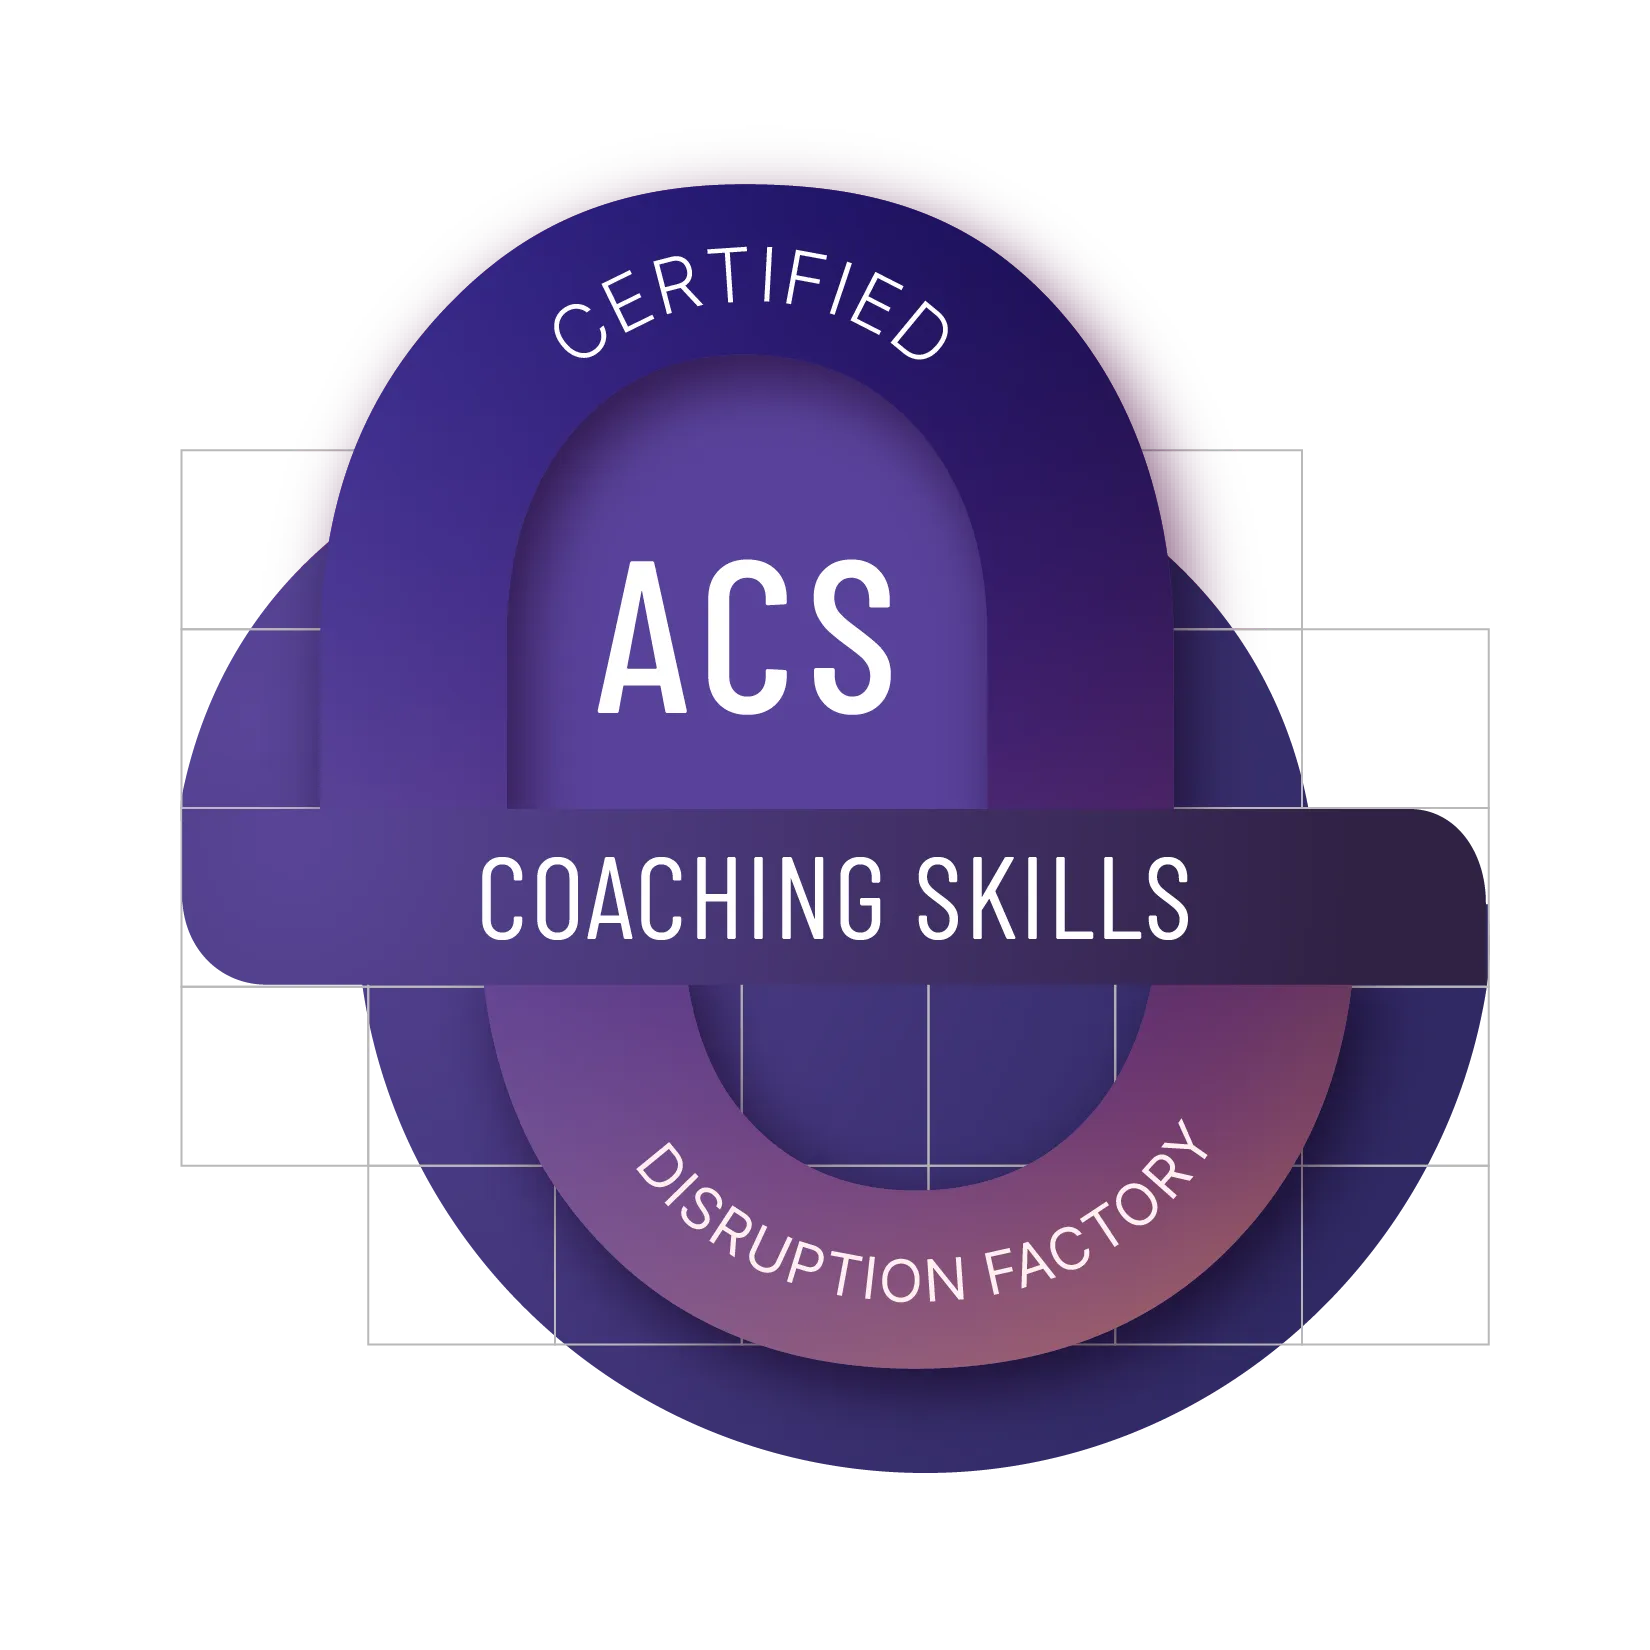 Agile Coaching Skills (ACS)